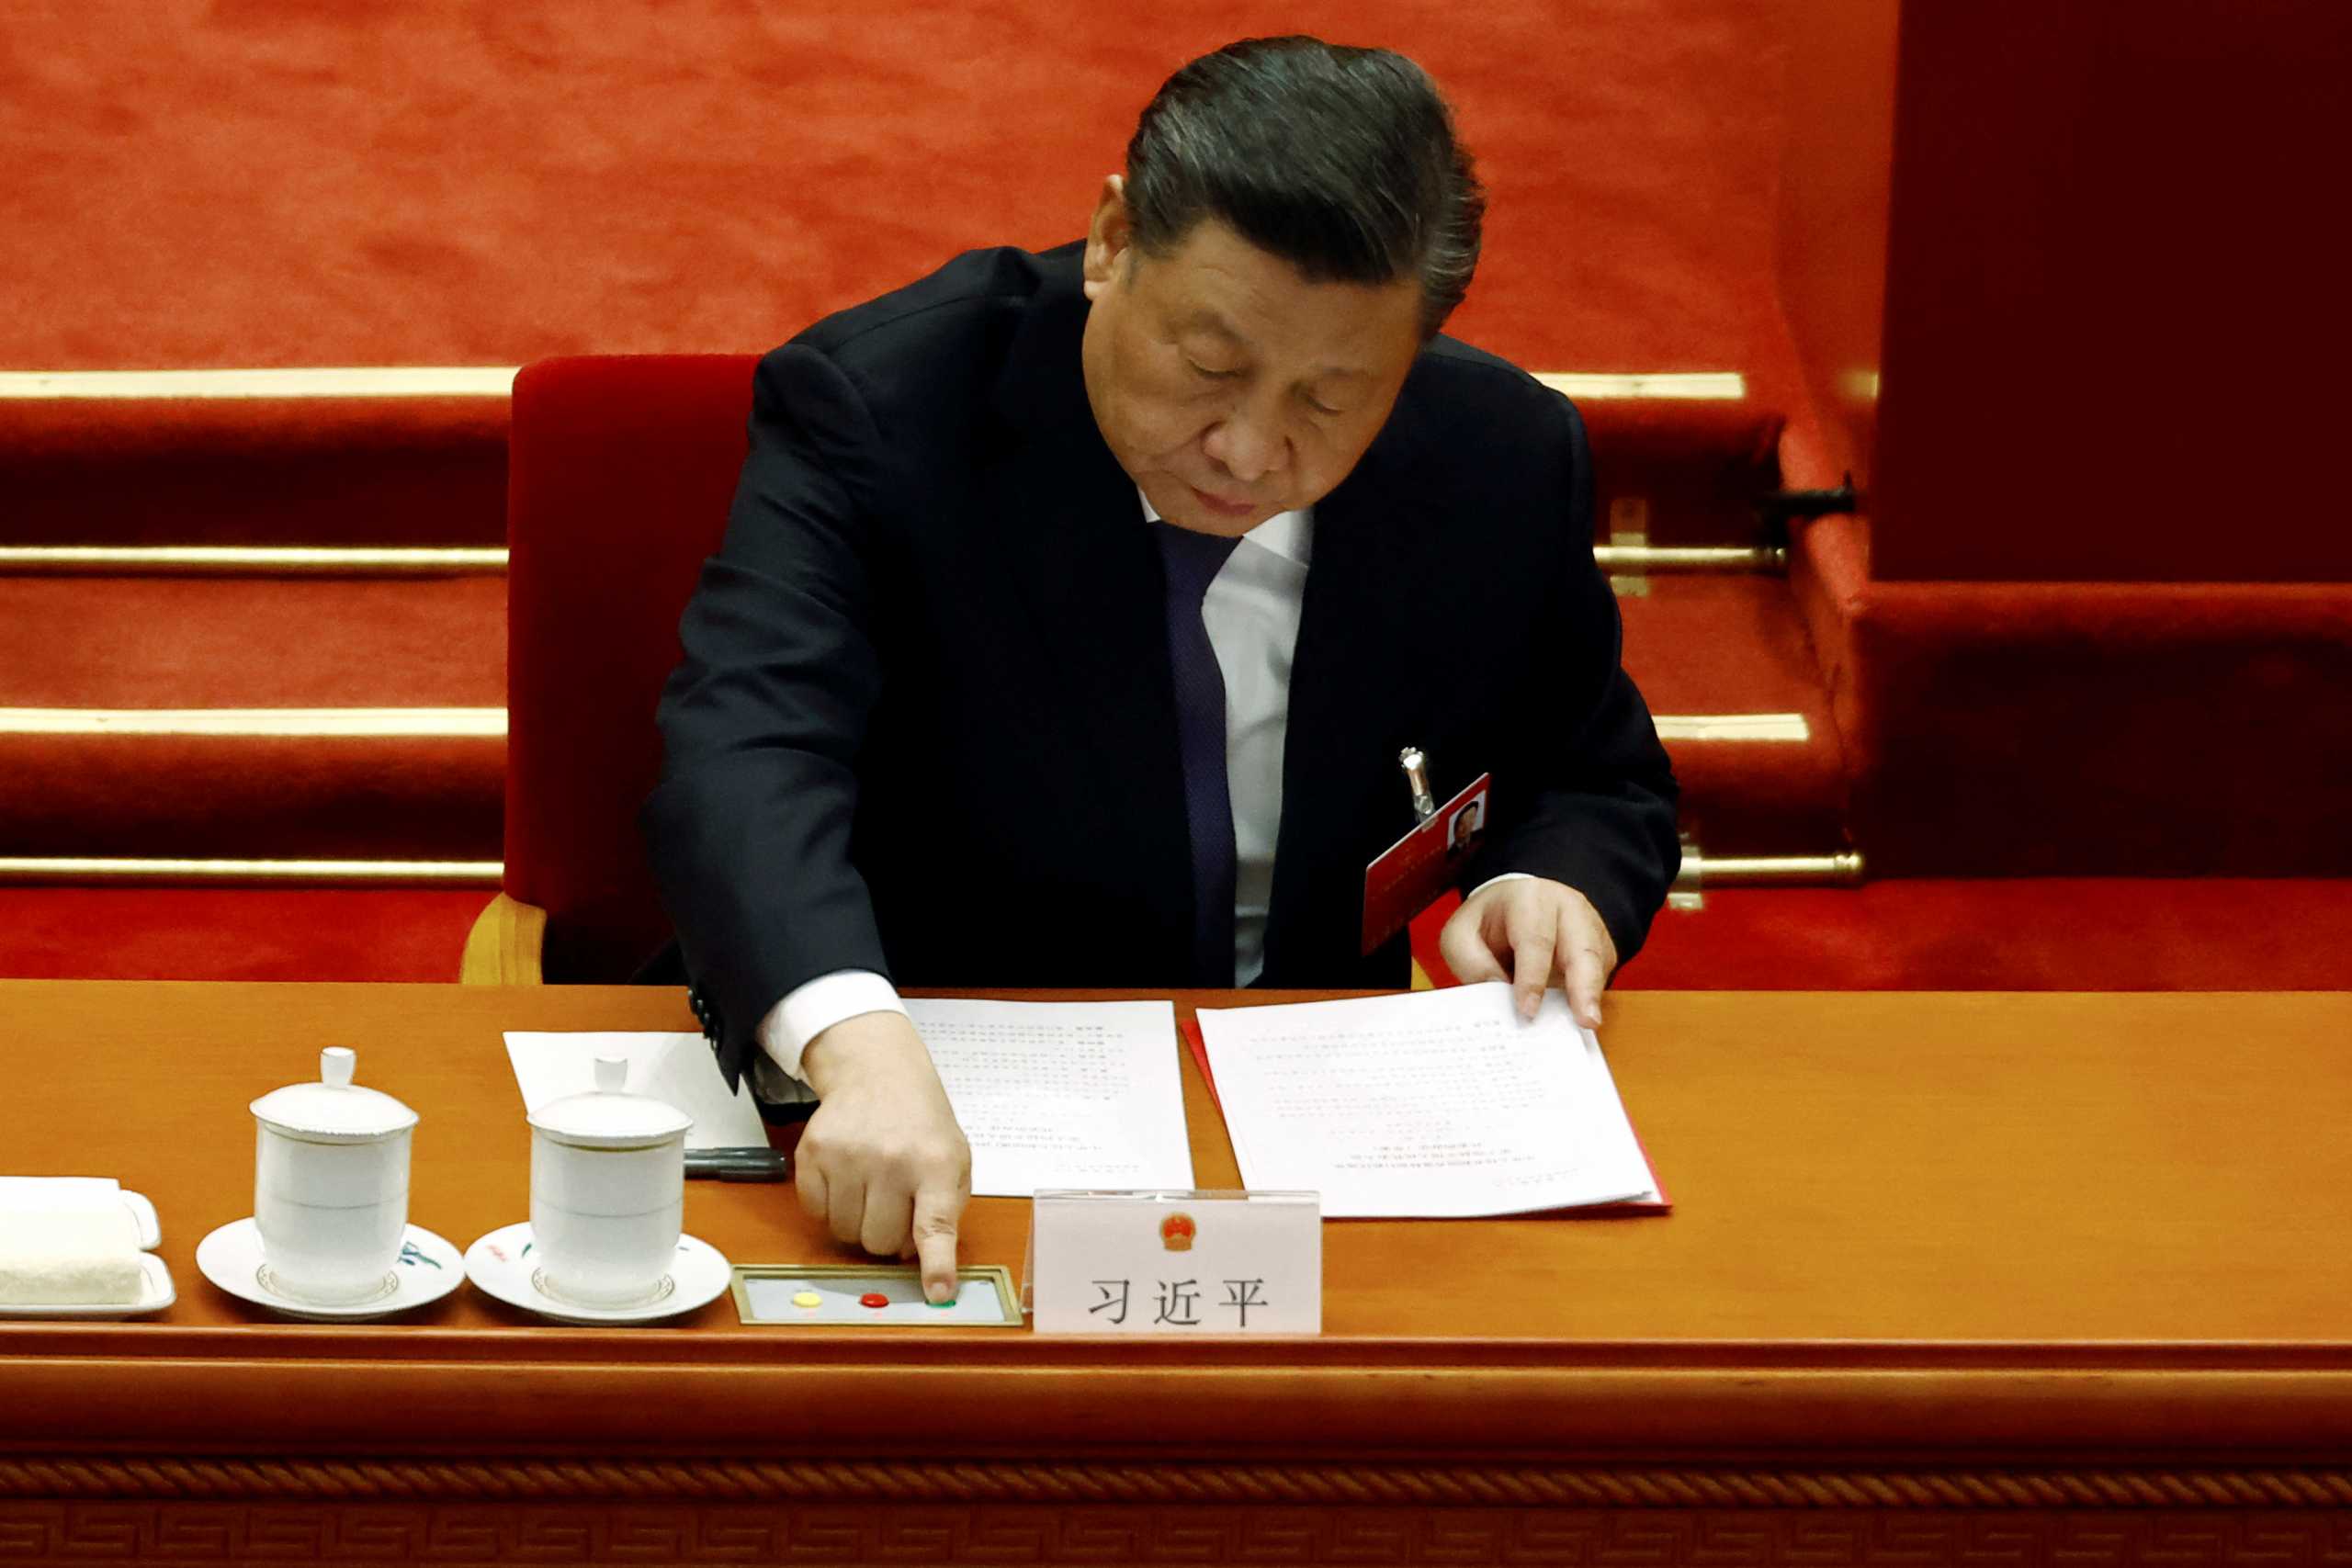 Σι Τζινπίνγκ: O πρόεδρος της Κίνας που ζούσε σε σπηλιά και επανεξελέγη για τρίτη θητεία